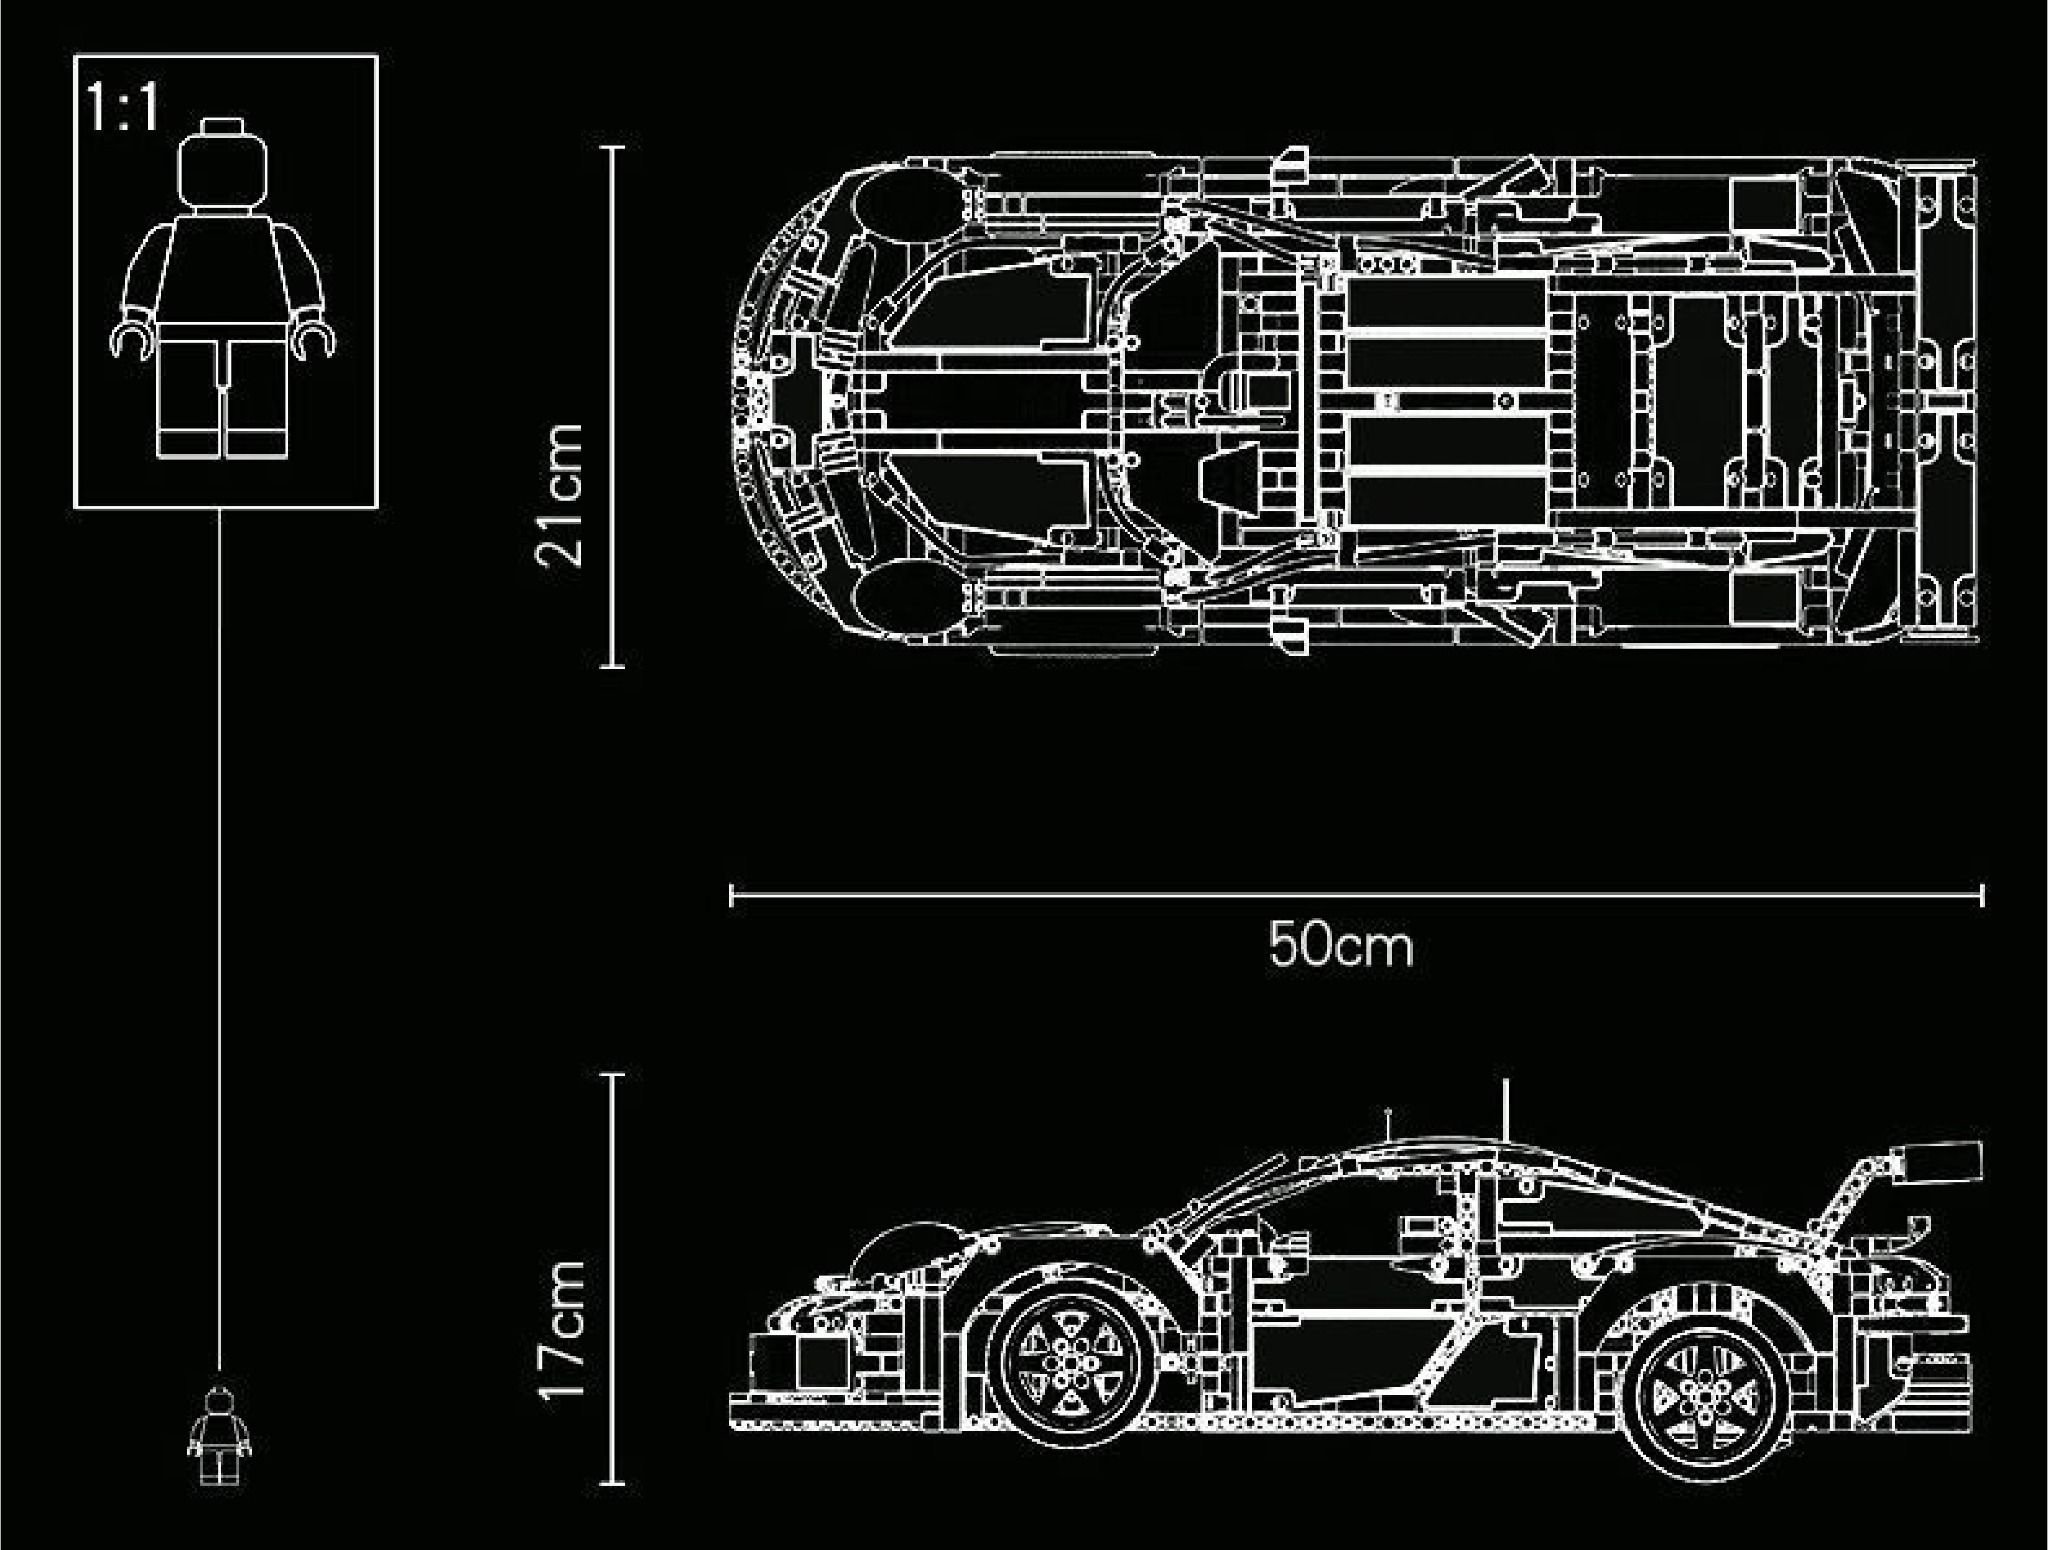  Mô hình xe ô tô lắp ghép Porsche 911 RSR Technic 1580 pcs tỉ lệ 1:10 LG004 